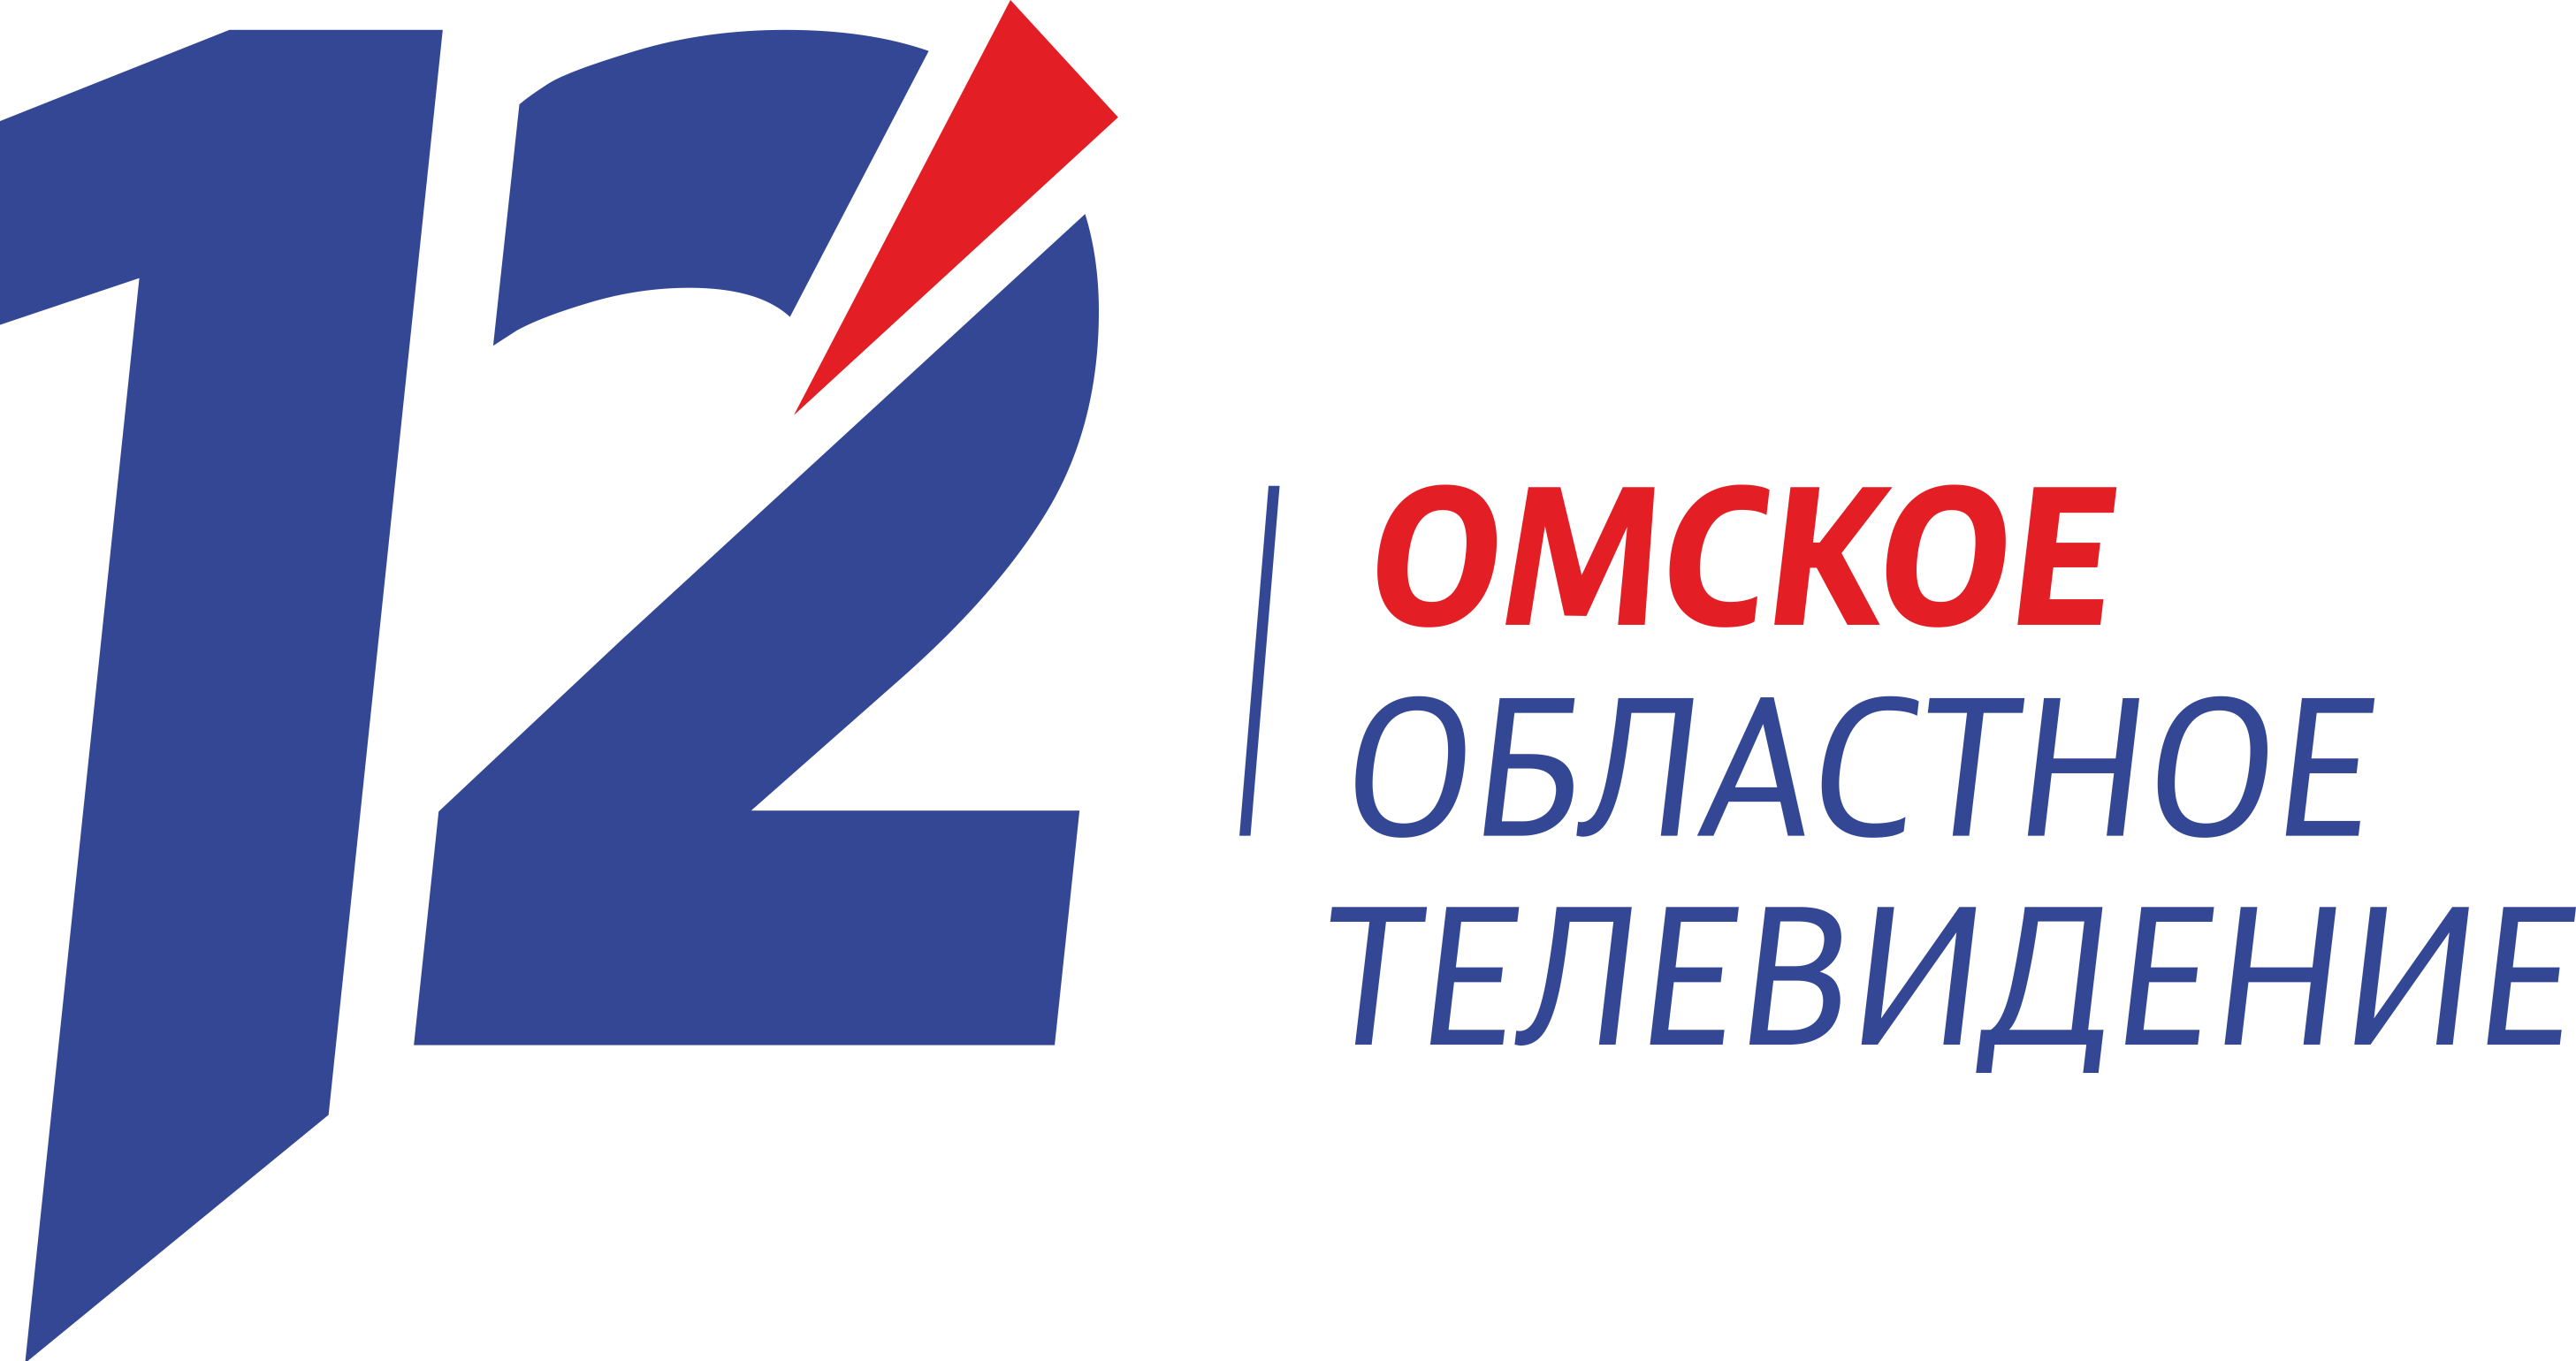 12 телеканал прямой эфир. 12 Канал логотип. Омское областное Телевидение. 12 Канал Омск. 12 Канал Омск логотип.